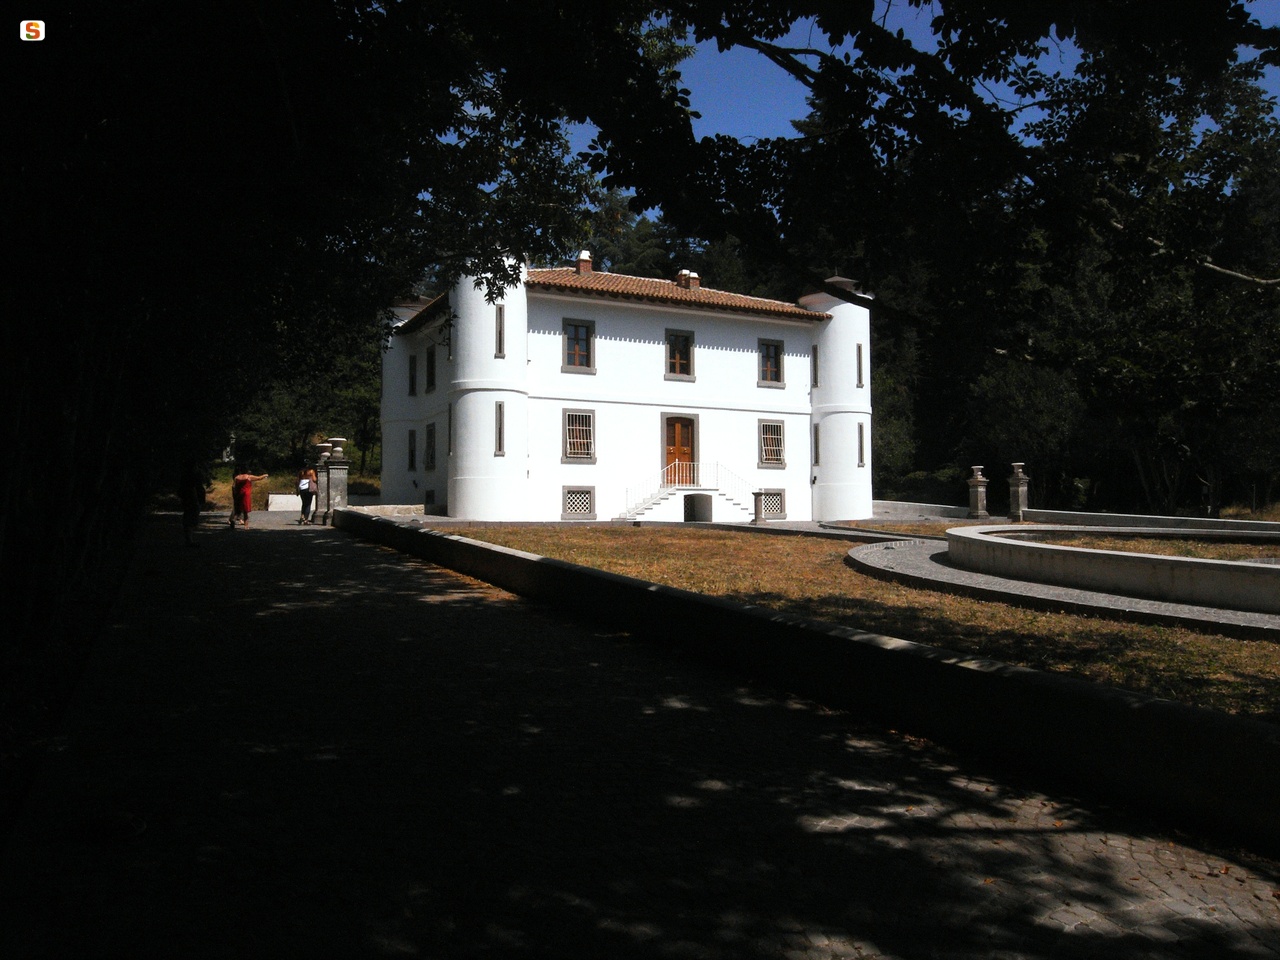 Bolotana, Badde Salighes Villa Piercy